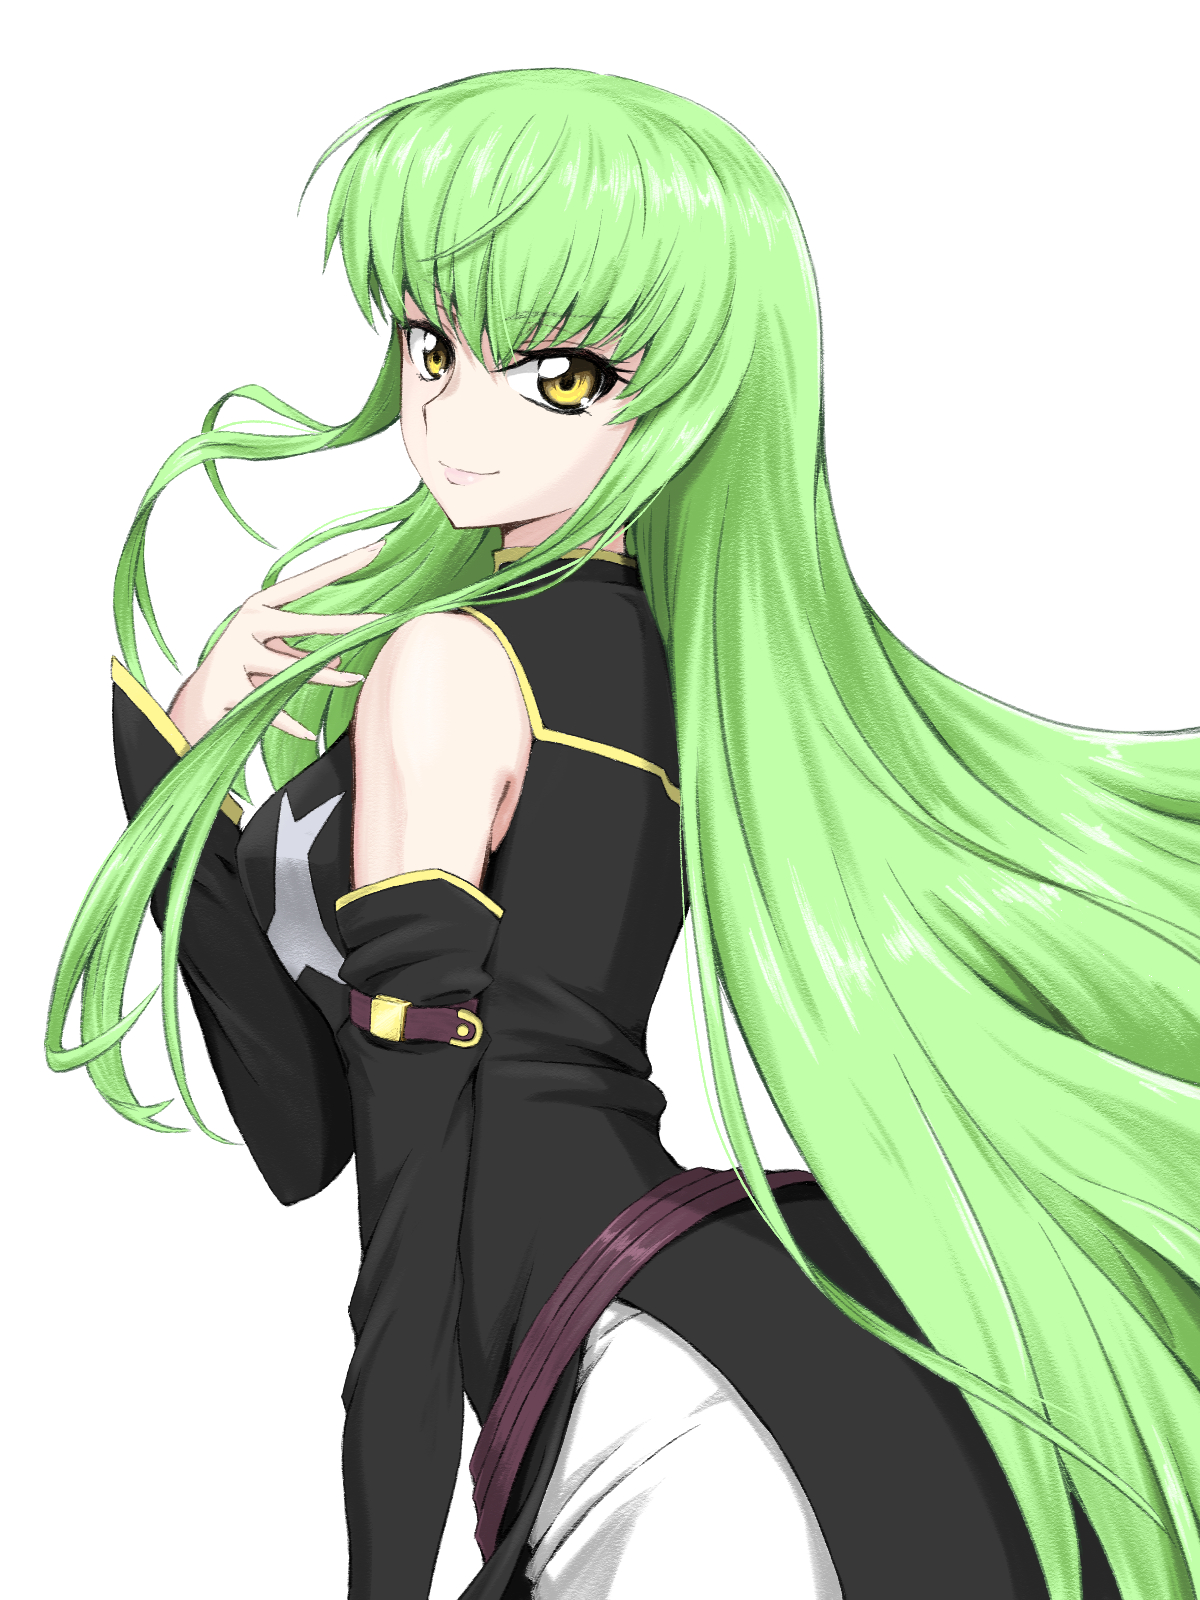 Anime Anime Girls Code Geass C C Code Geass Long Hair Green Hair Super Robot Taisen Artwork Digital  1200x1600